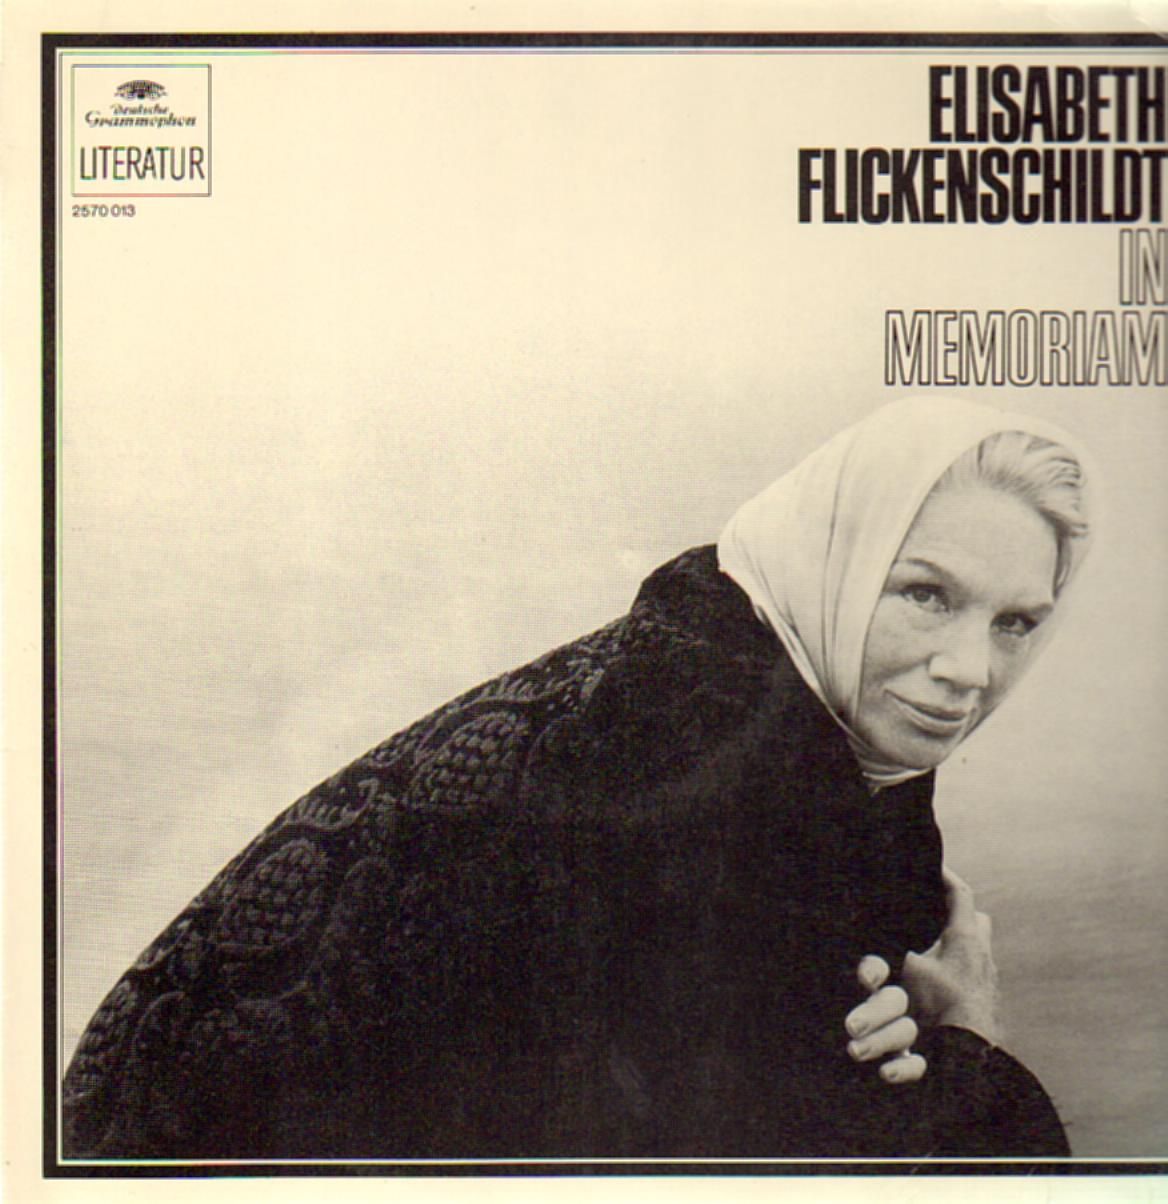 Elisabeth Flickenschild